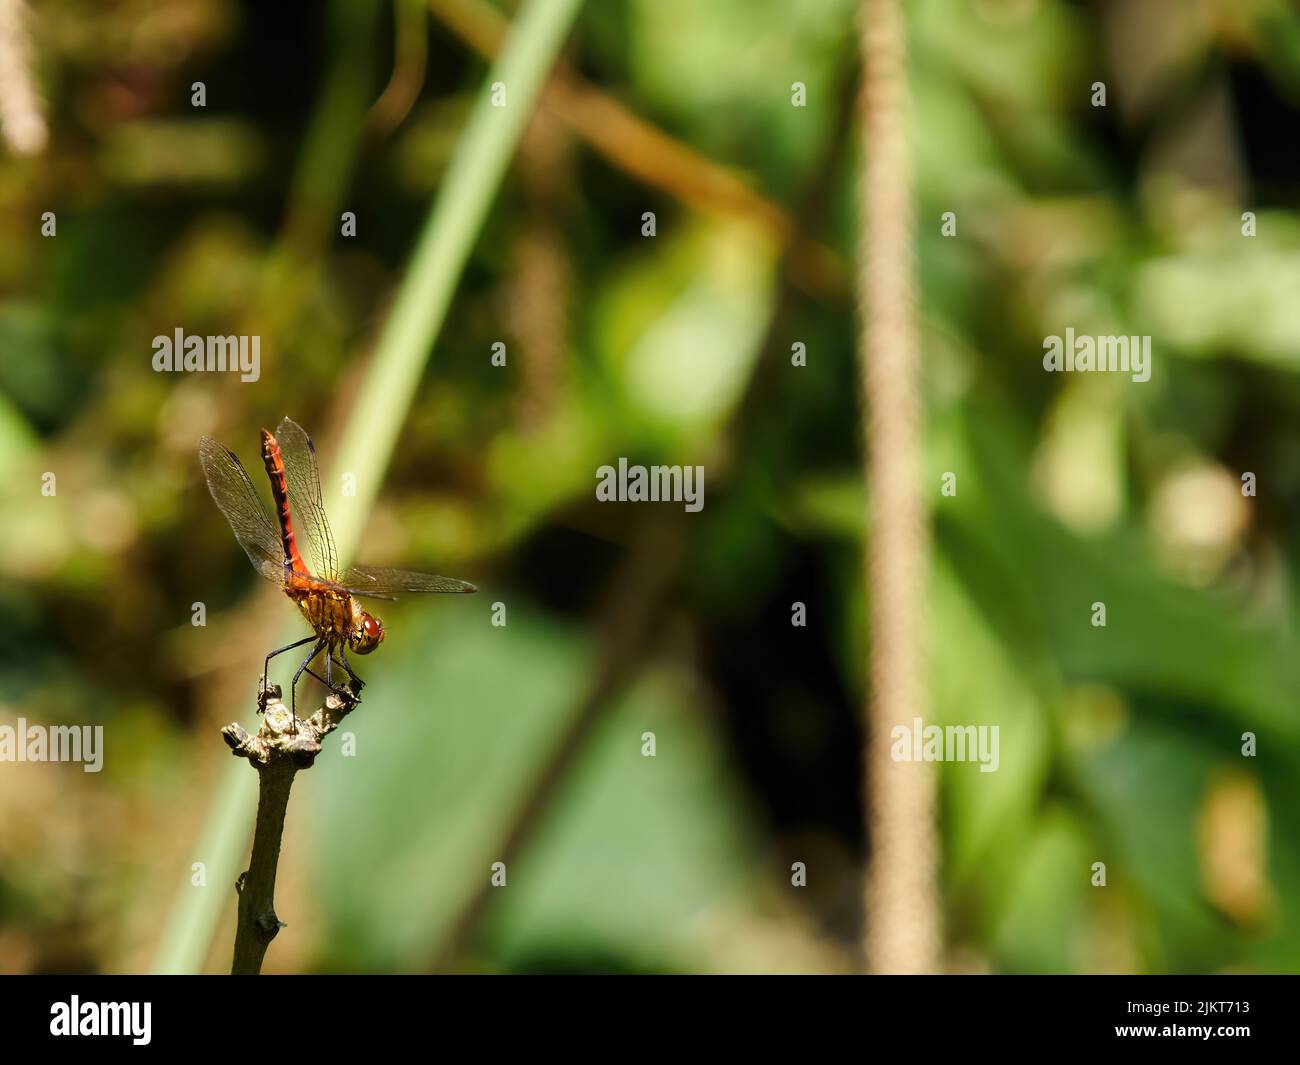 Una libélula negra con un velo rojo en plena luz del sol, situada en la punta de un tallo de una planta, a punto de lanzarse al aire y tomar vuelo. Foto de stock